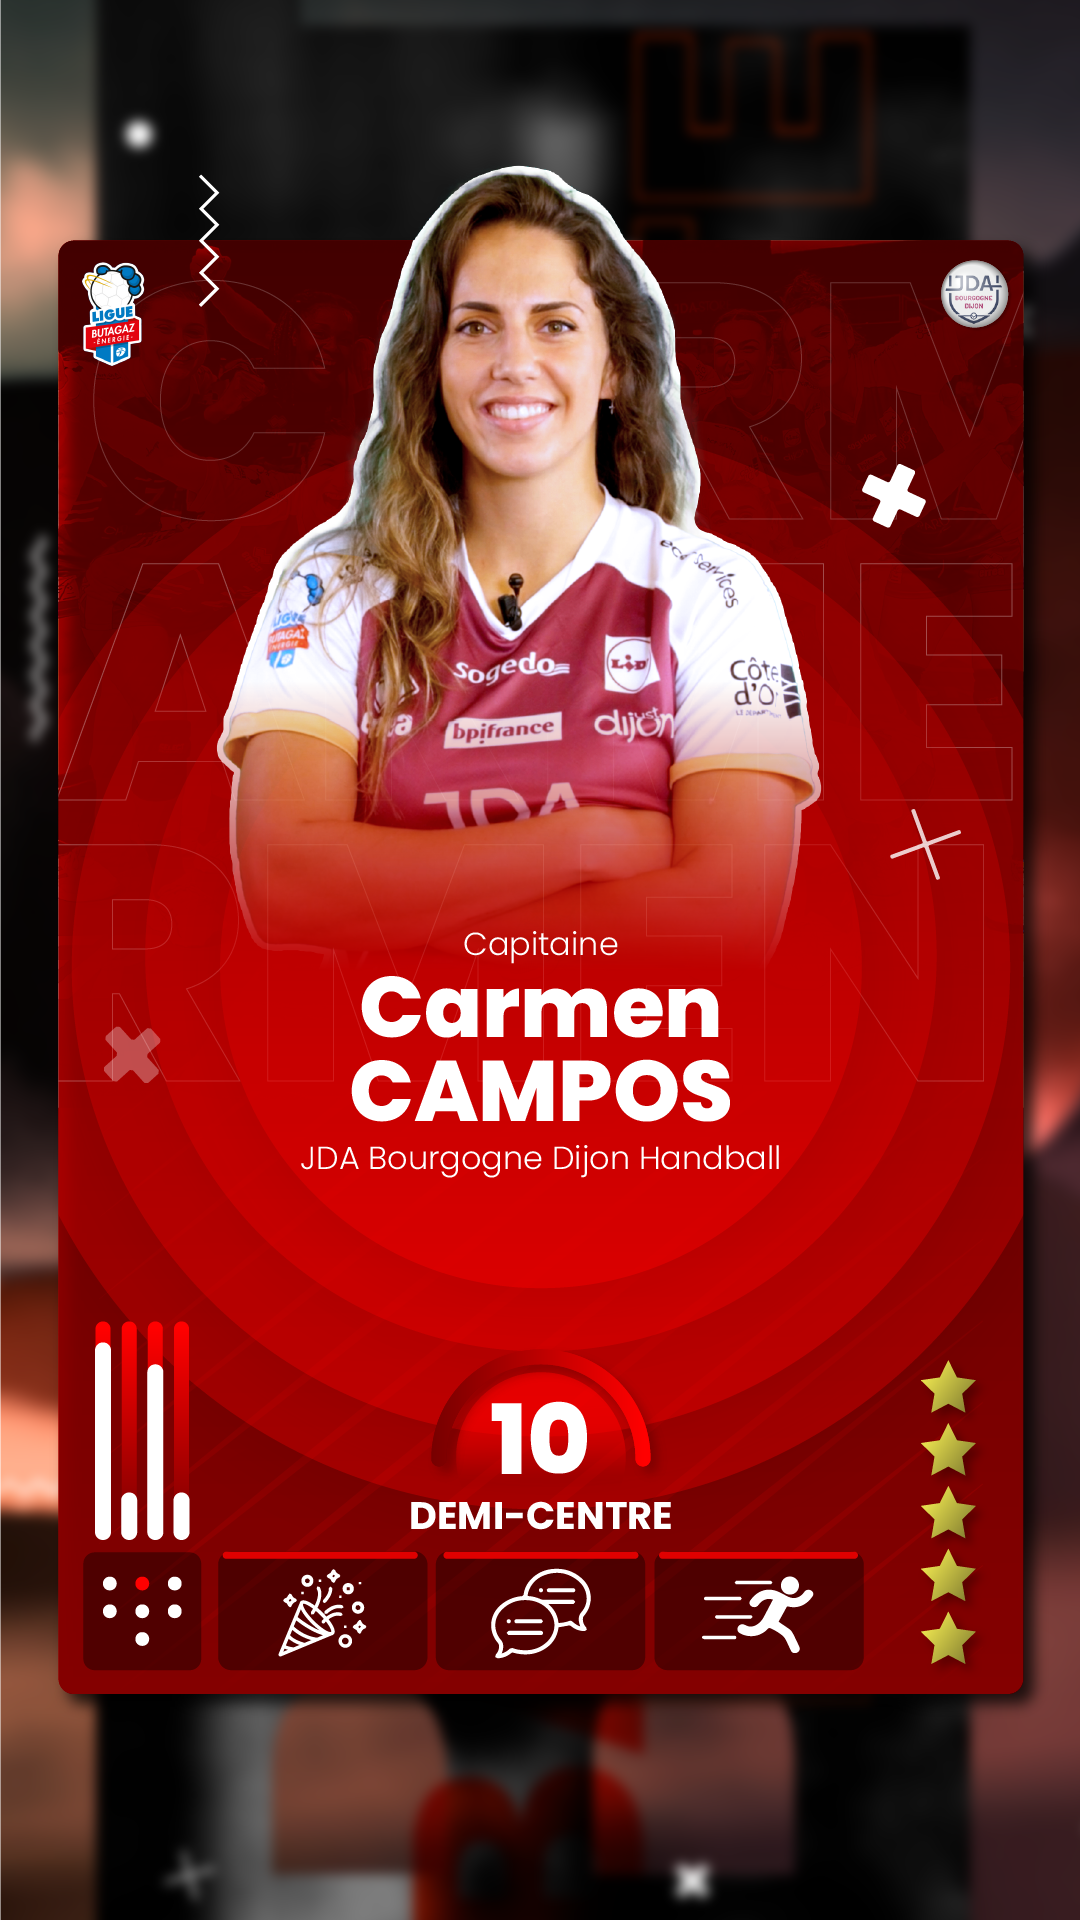 Carmen Campos, capitaine de la JDA Bourgogne Dijon Handball